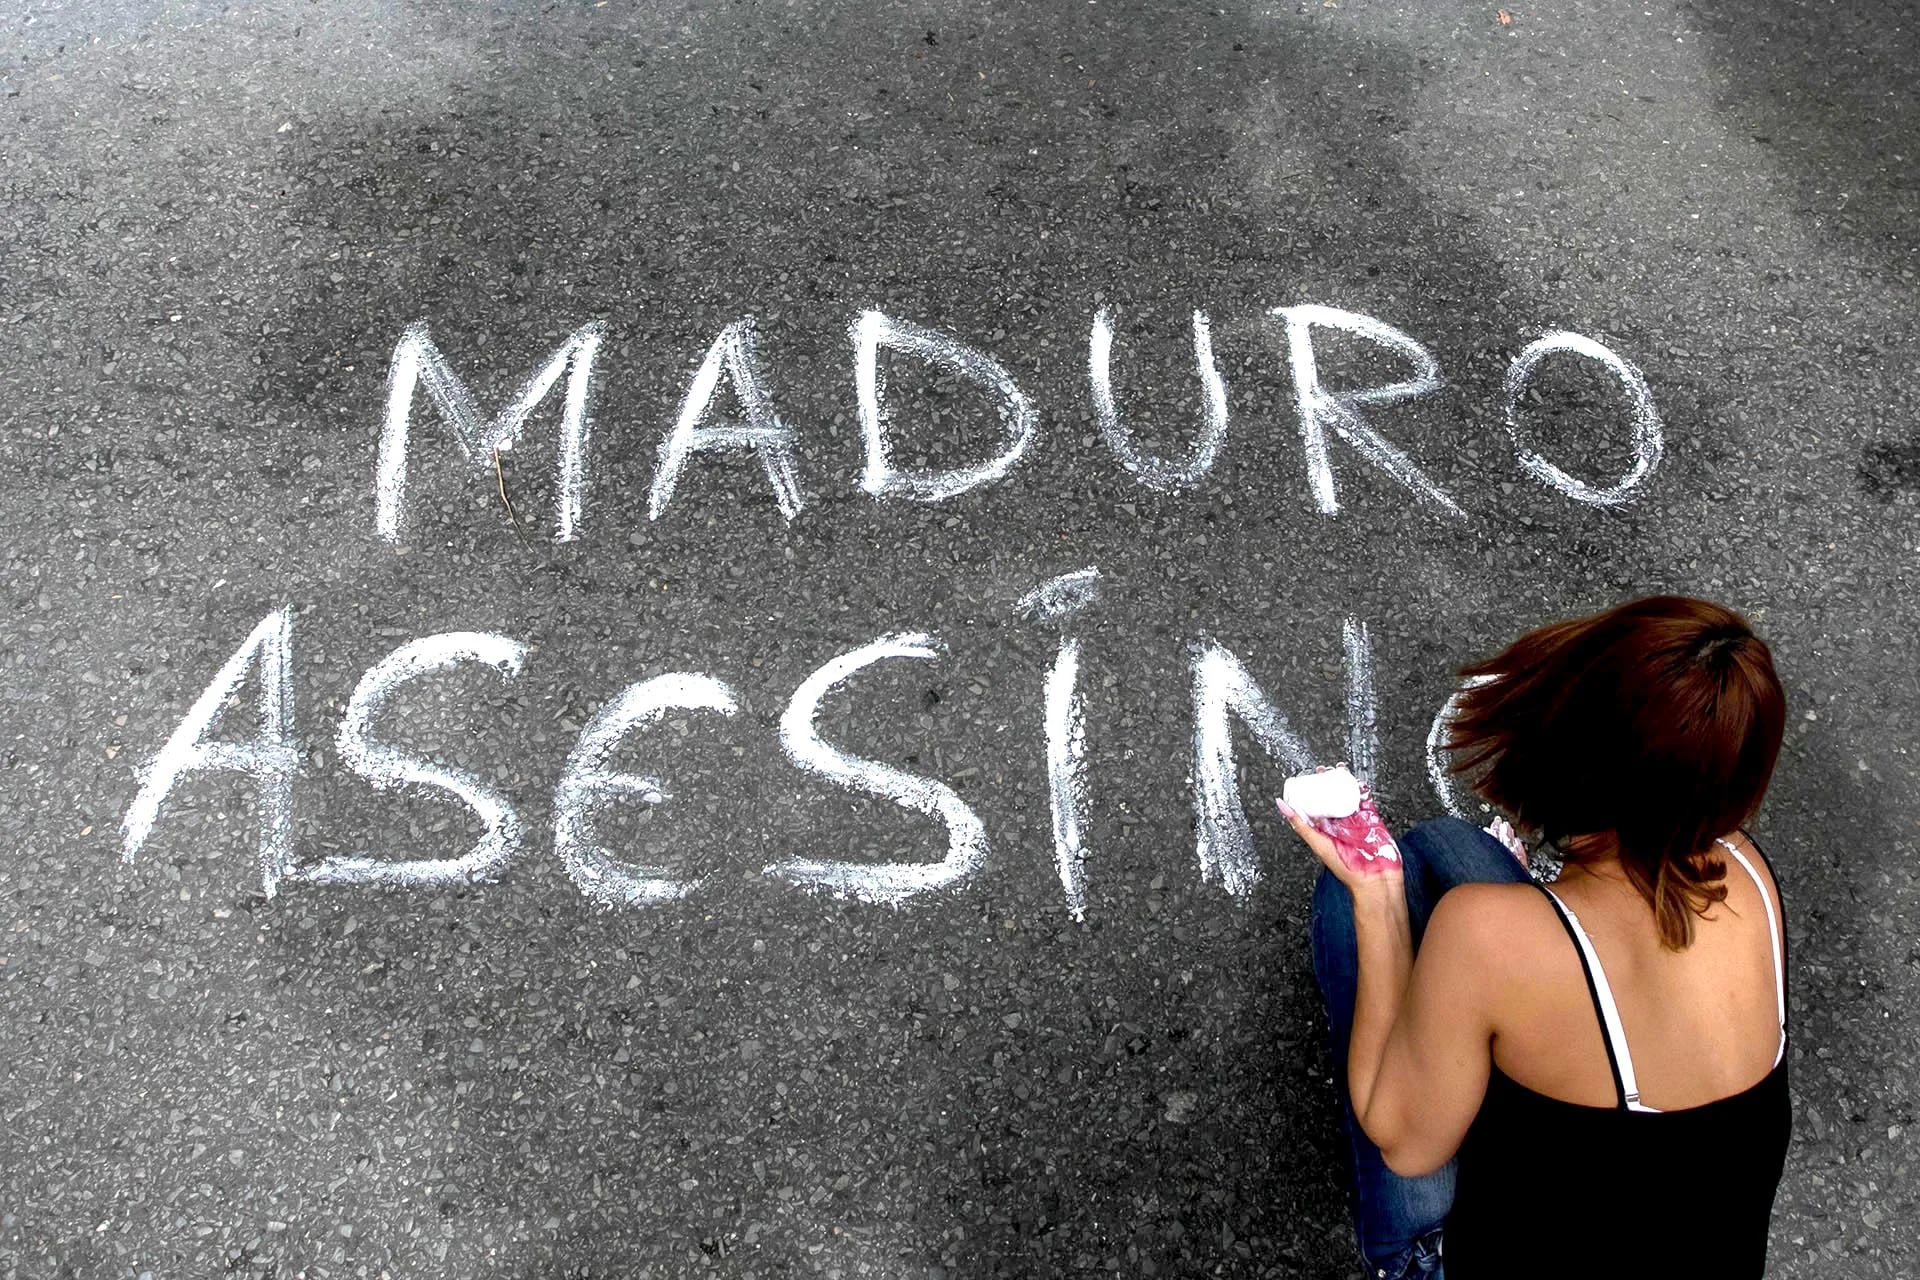 Una mujer escribe un mensaje sobre el asfalto durante una manifestación en Caracas